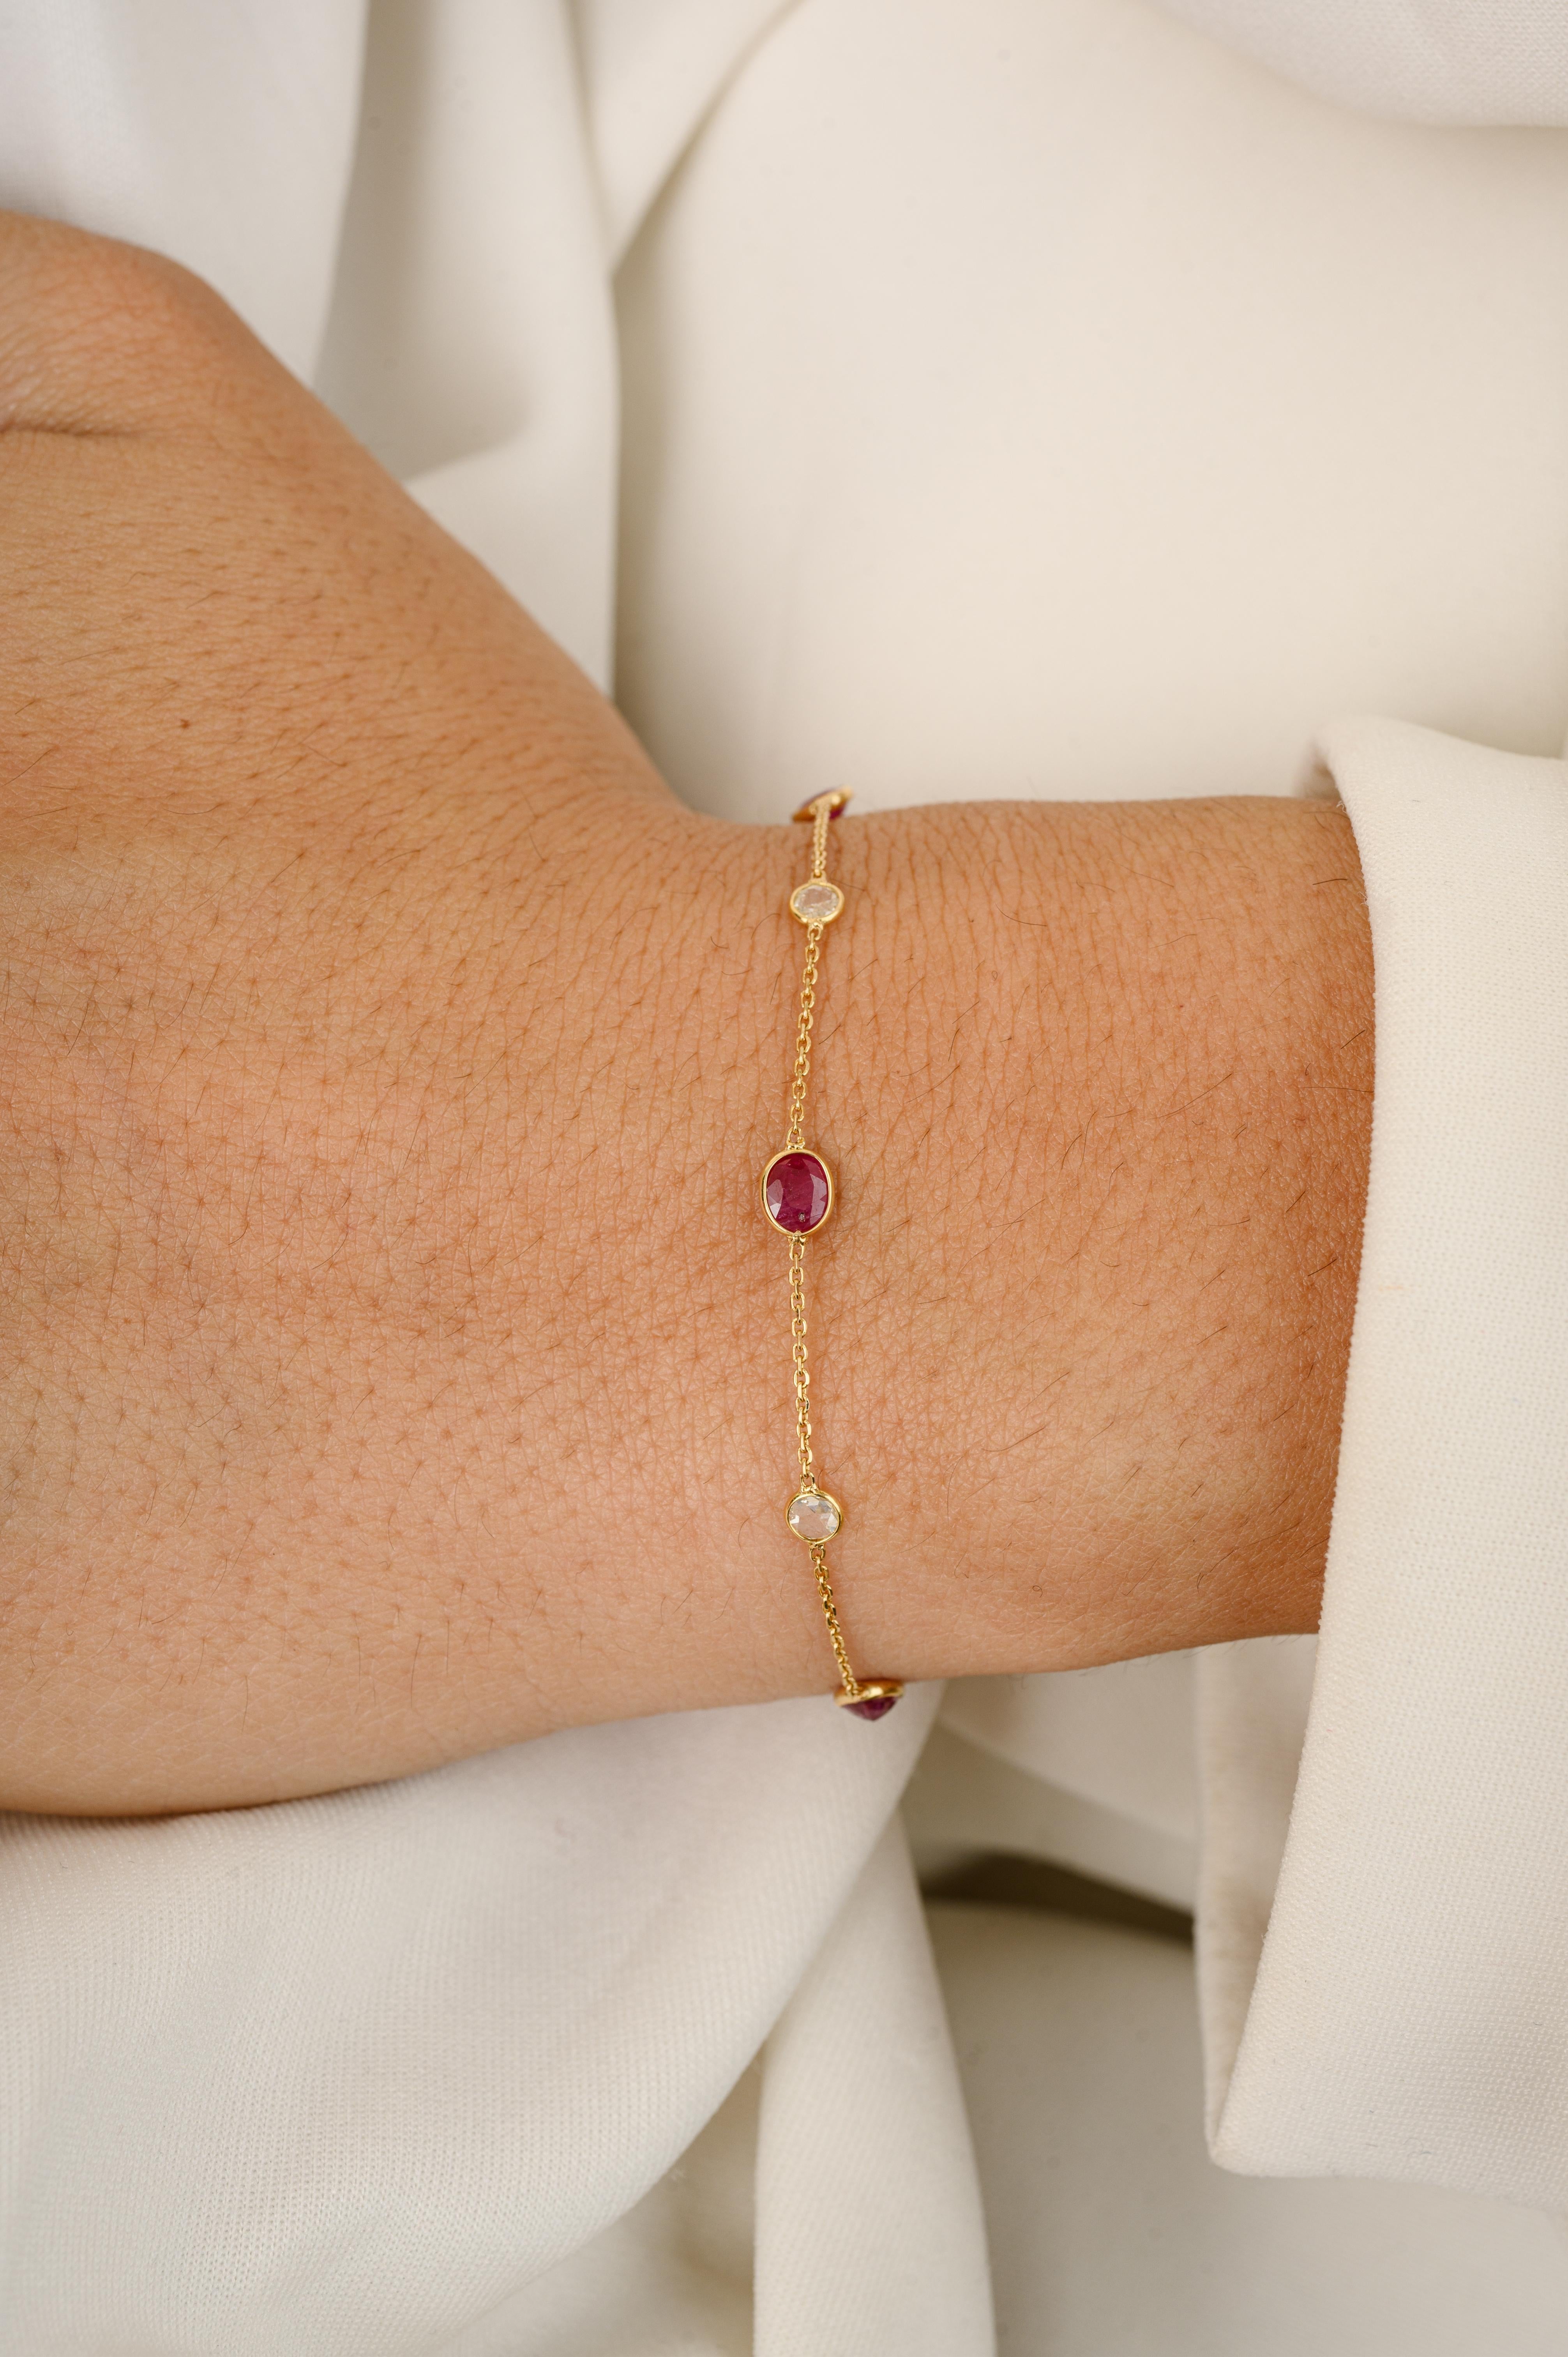 Dieses minimalistische Armband aus 18 Karat Gold mit natürlicher Rubin-Diamant-Kette präsentiert 0,32 Karat unendlich funkelnde natürliche Rubine und 0,05 Karat Diamanten. Es misst 7 Zoll in der Länge. 
Rubin verbessert die mentale Stärke.
Entworfen